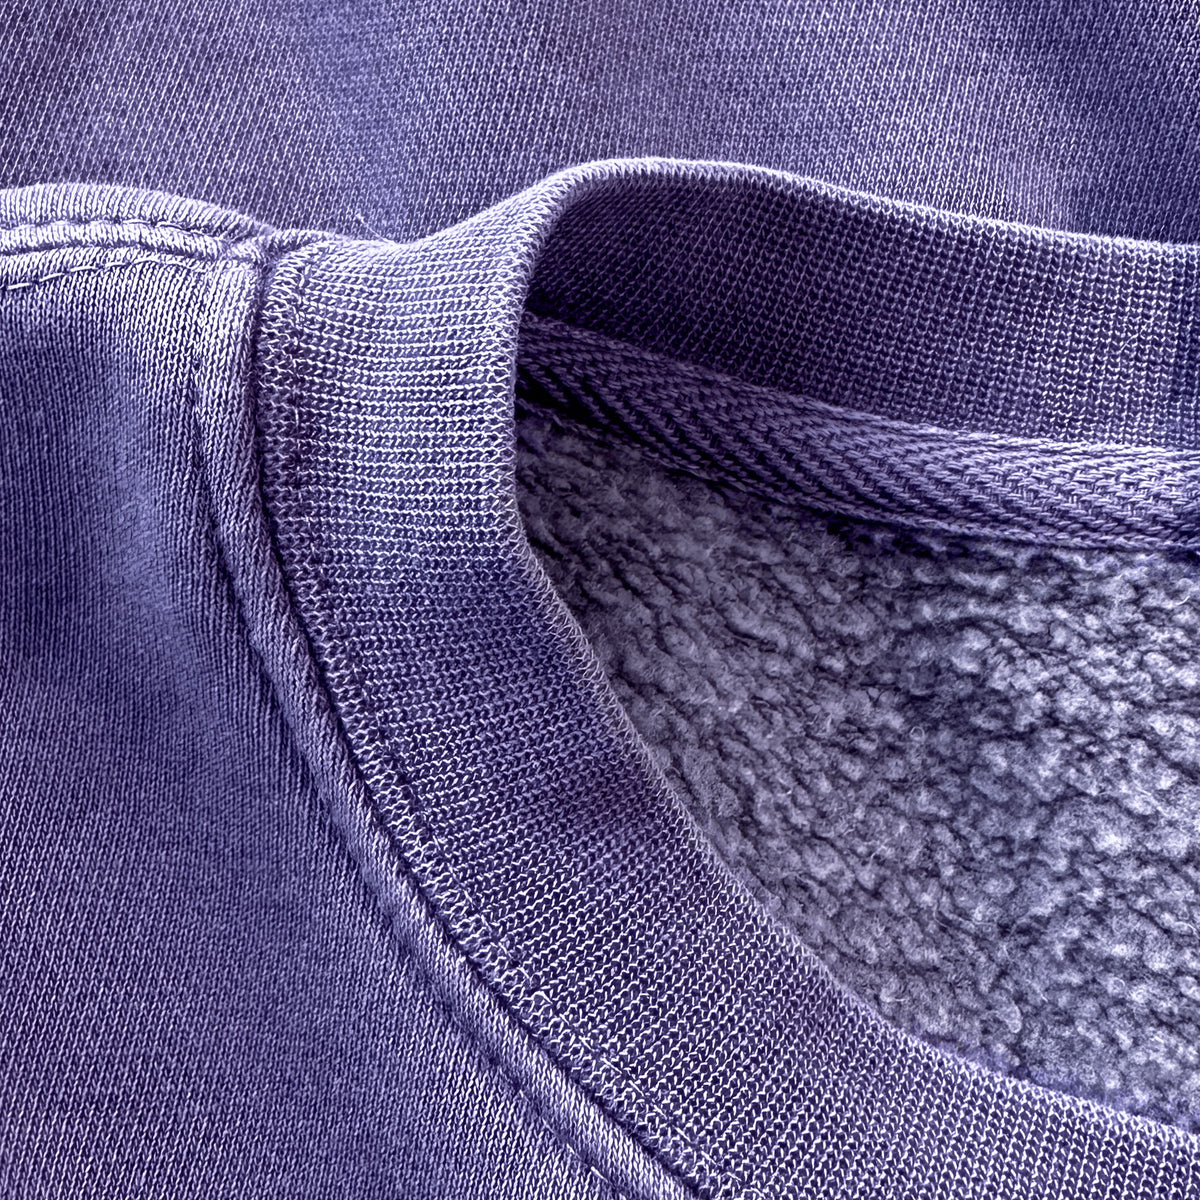 Chipmunk - Neotamias minimus - Unisex Pigment Dyed Crew Sweatshirt